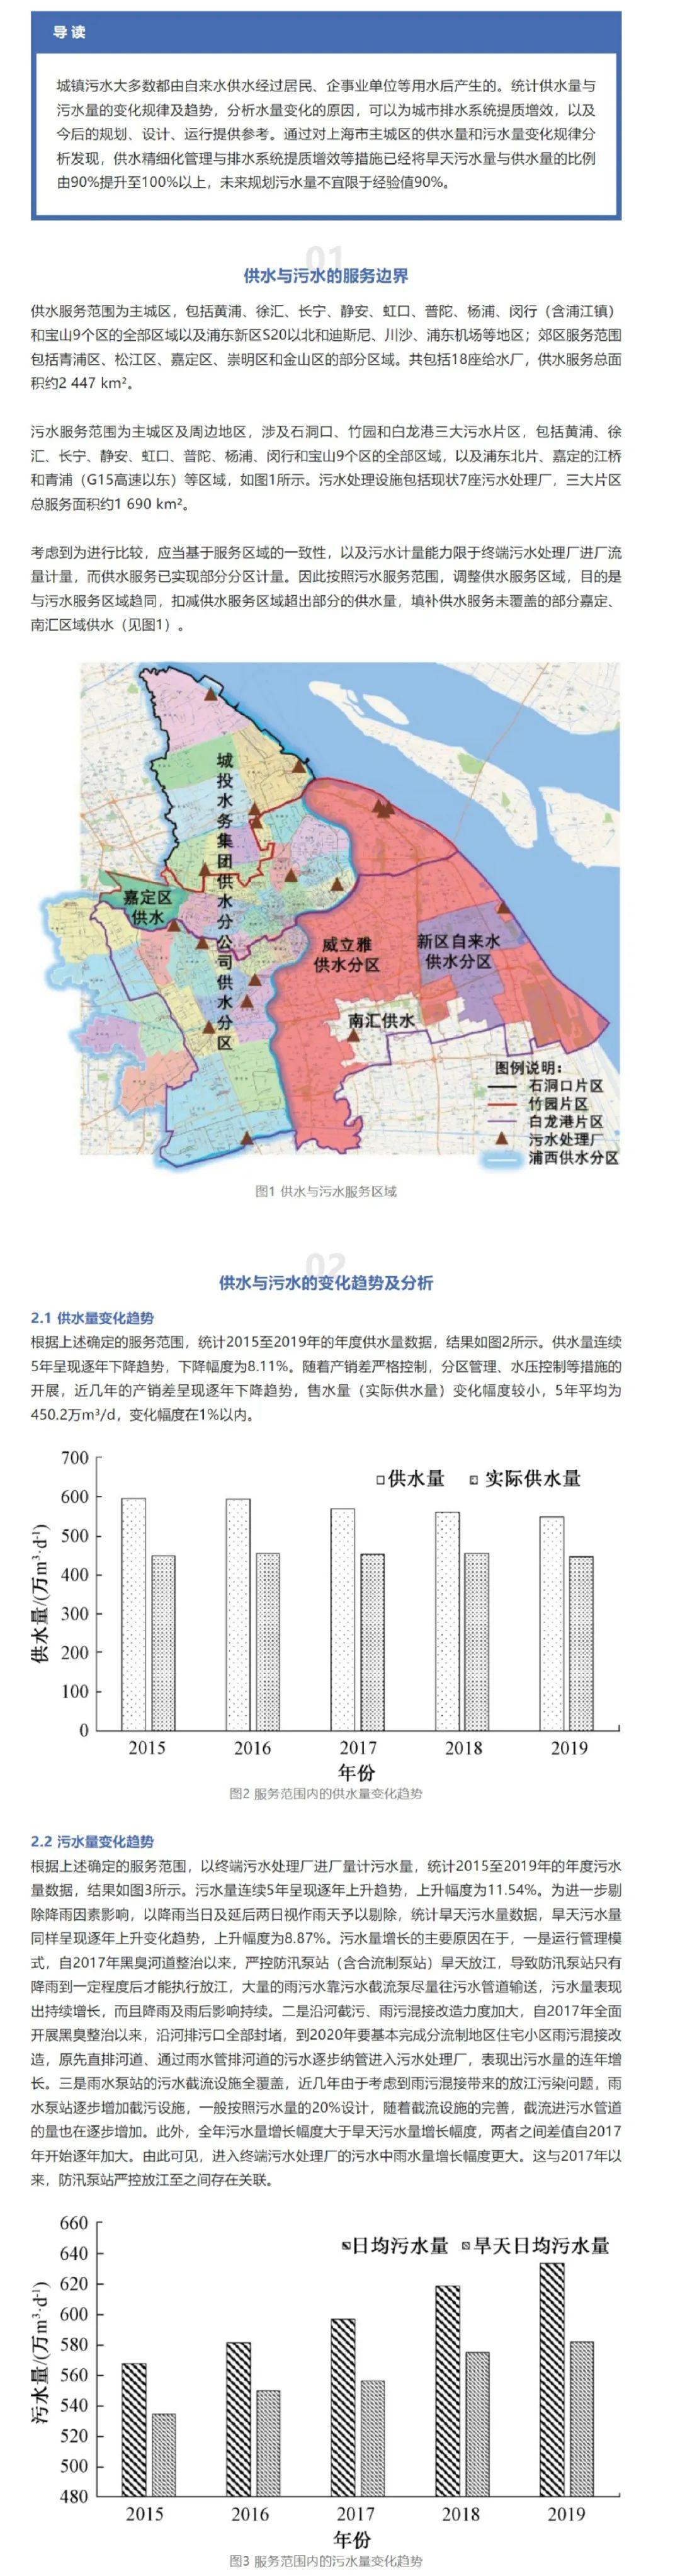 上海市主城区供水量与污水量变化规律研究